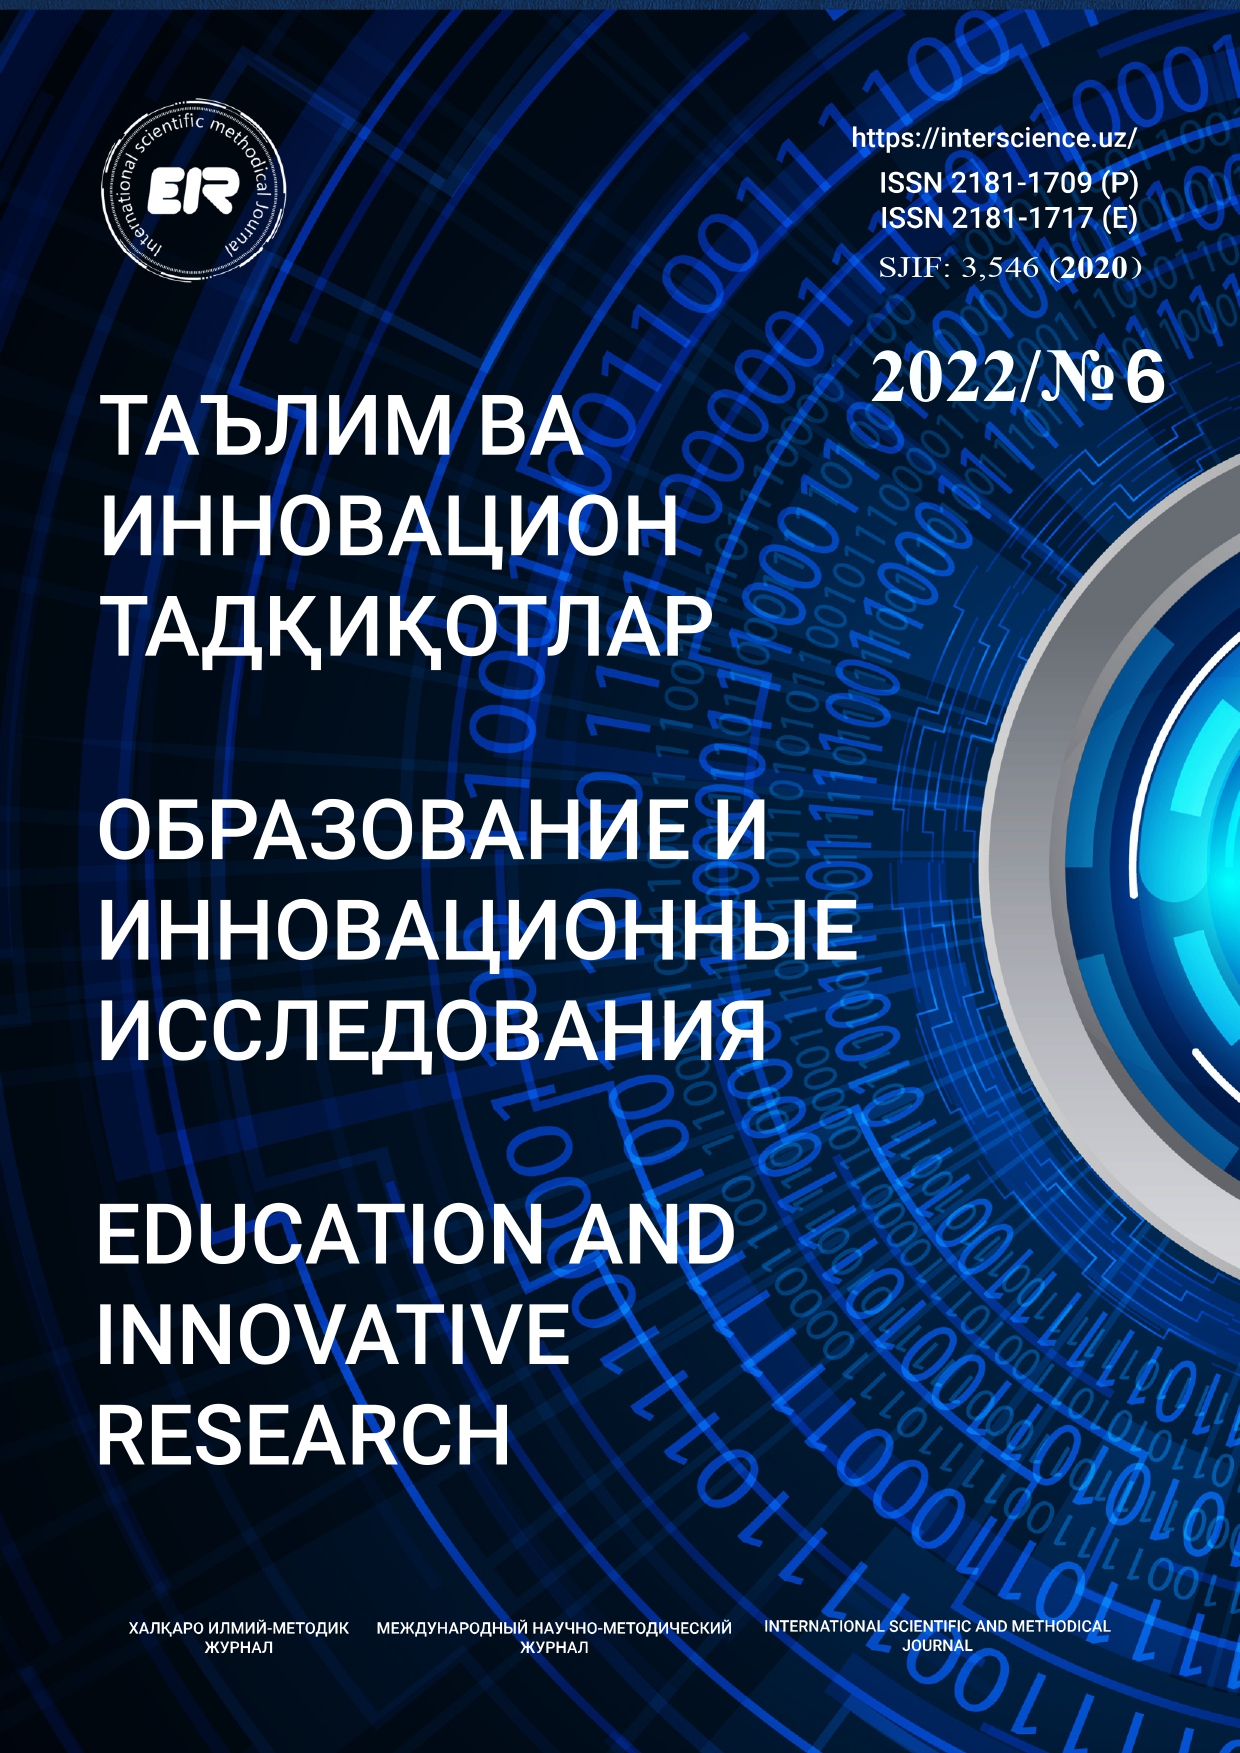 					Показать № 6 (2022): Образование и инновационные исследования
				